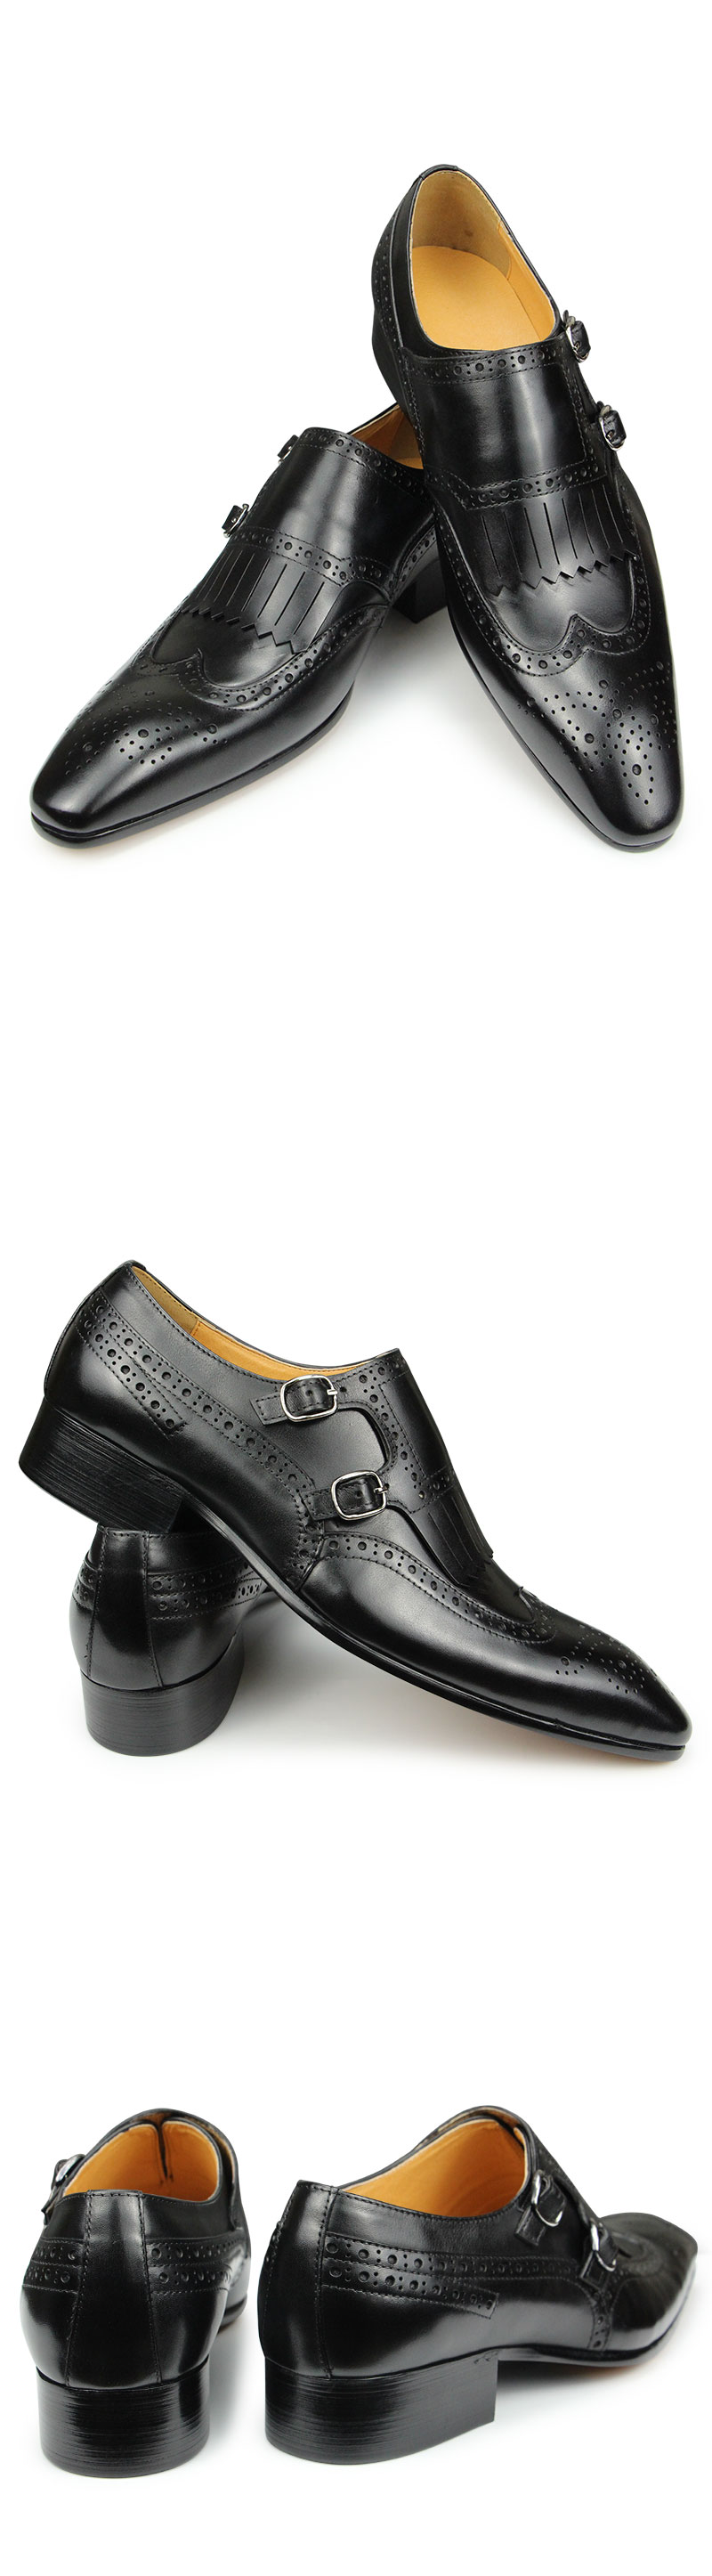 come4buy.com-Տղամարդու շքեղ սև կաշվից հարսանեկան կոշիկ